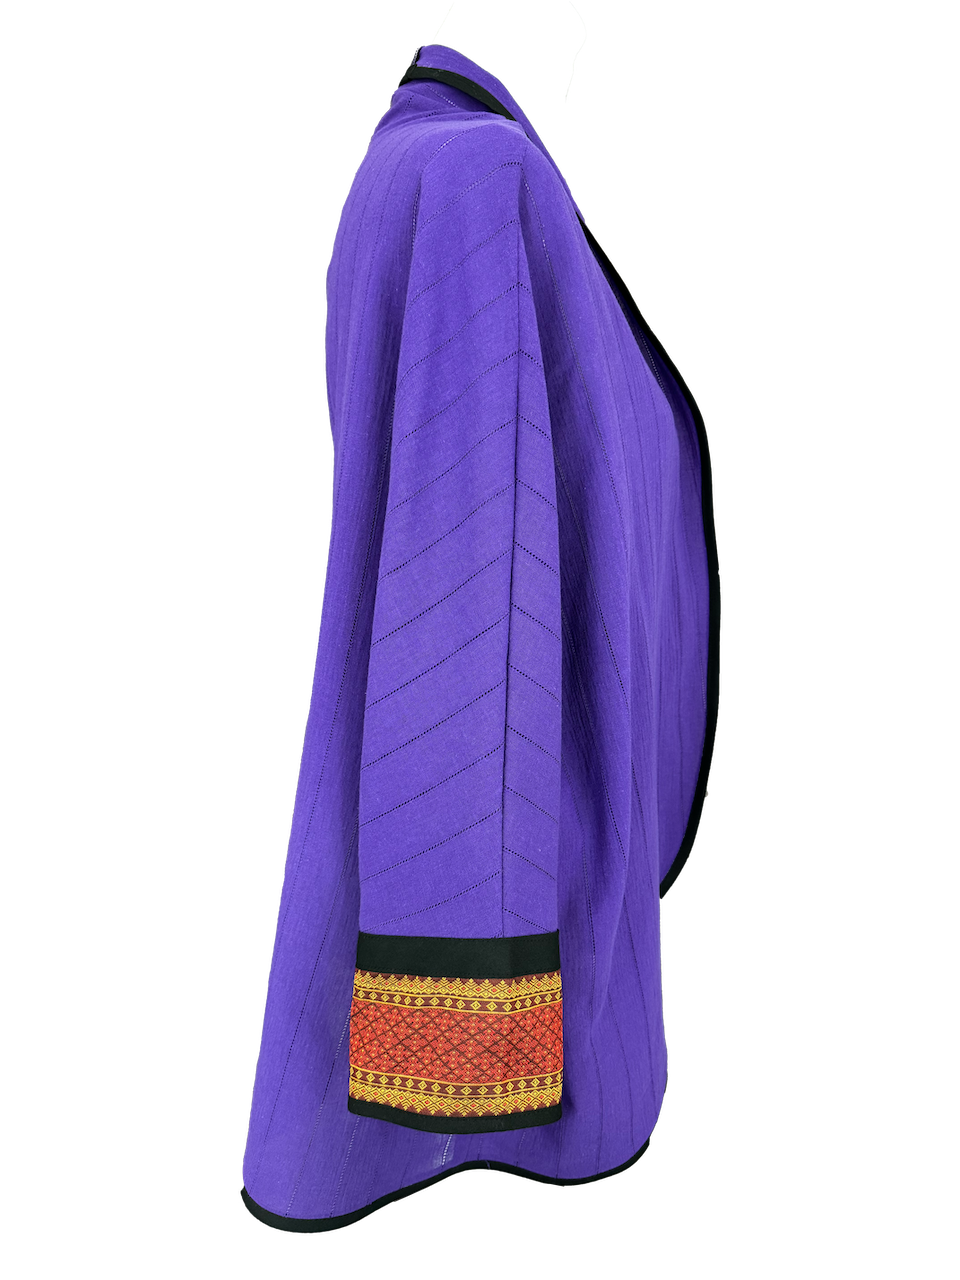 The Round Jacket in Purple With Silk Cuffs